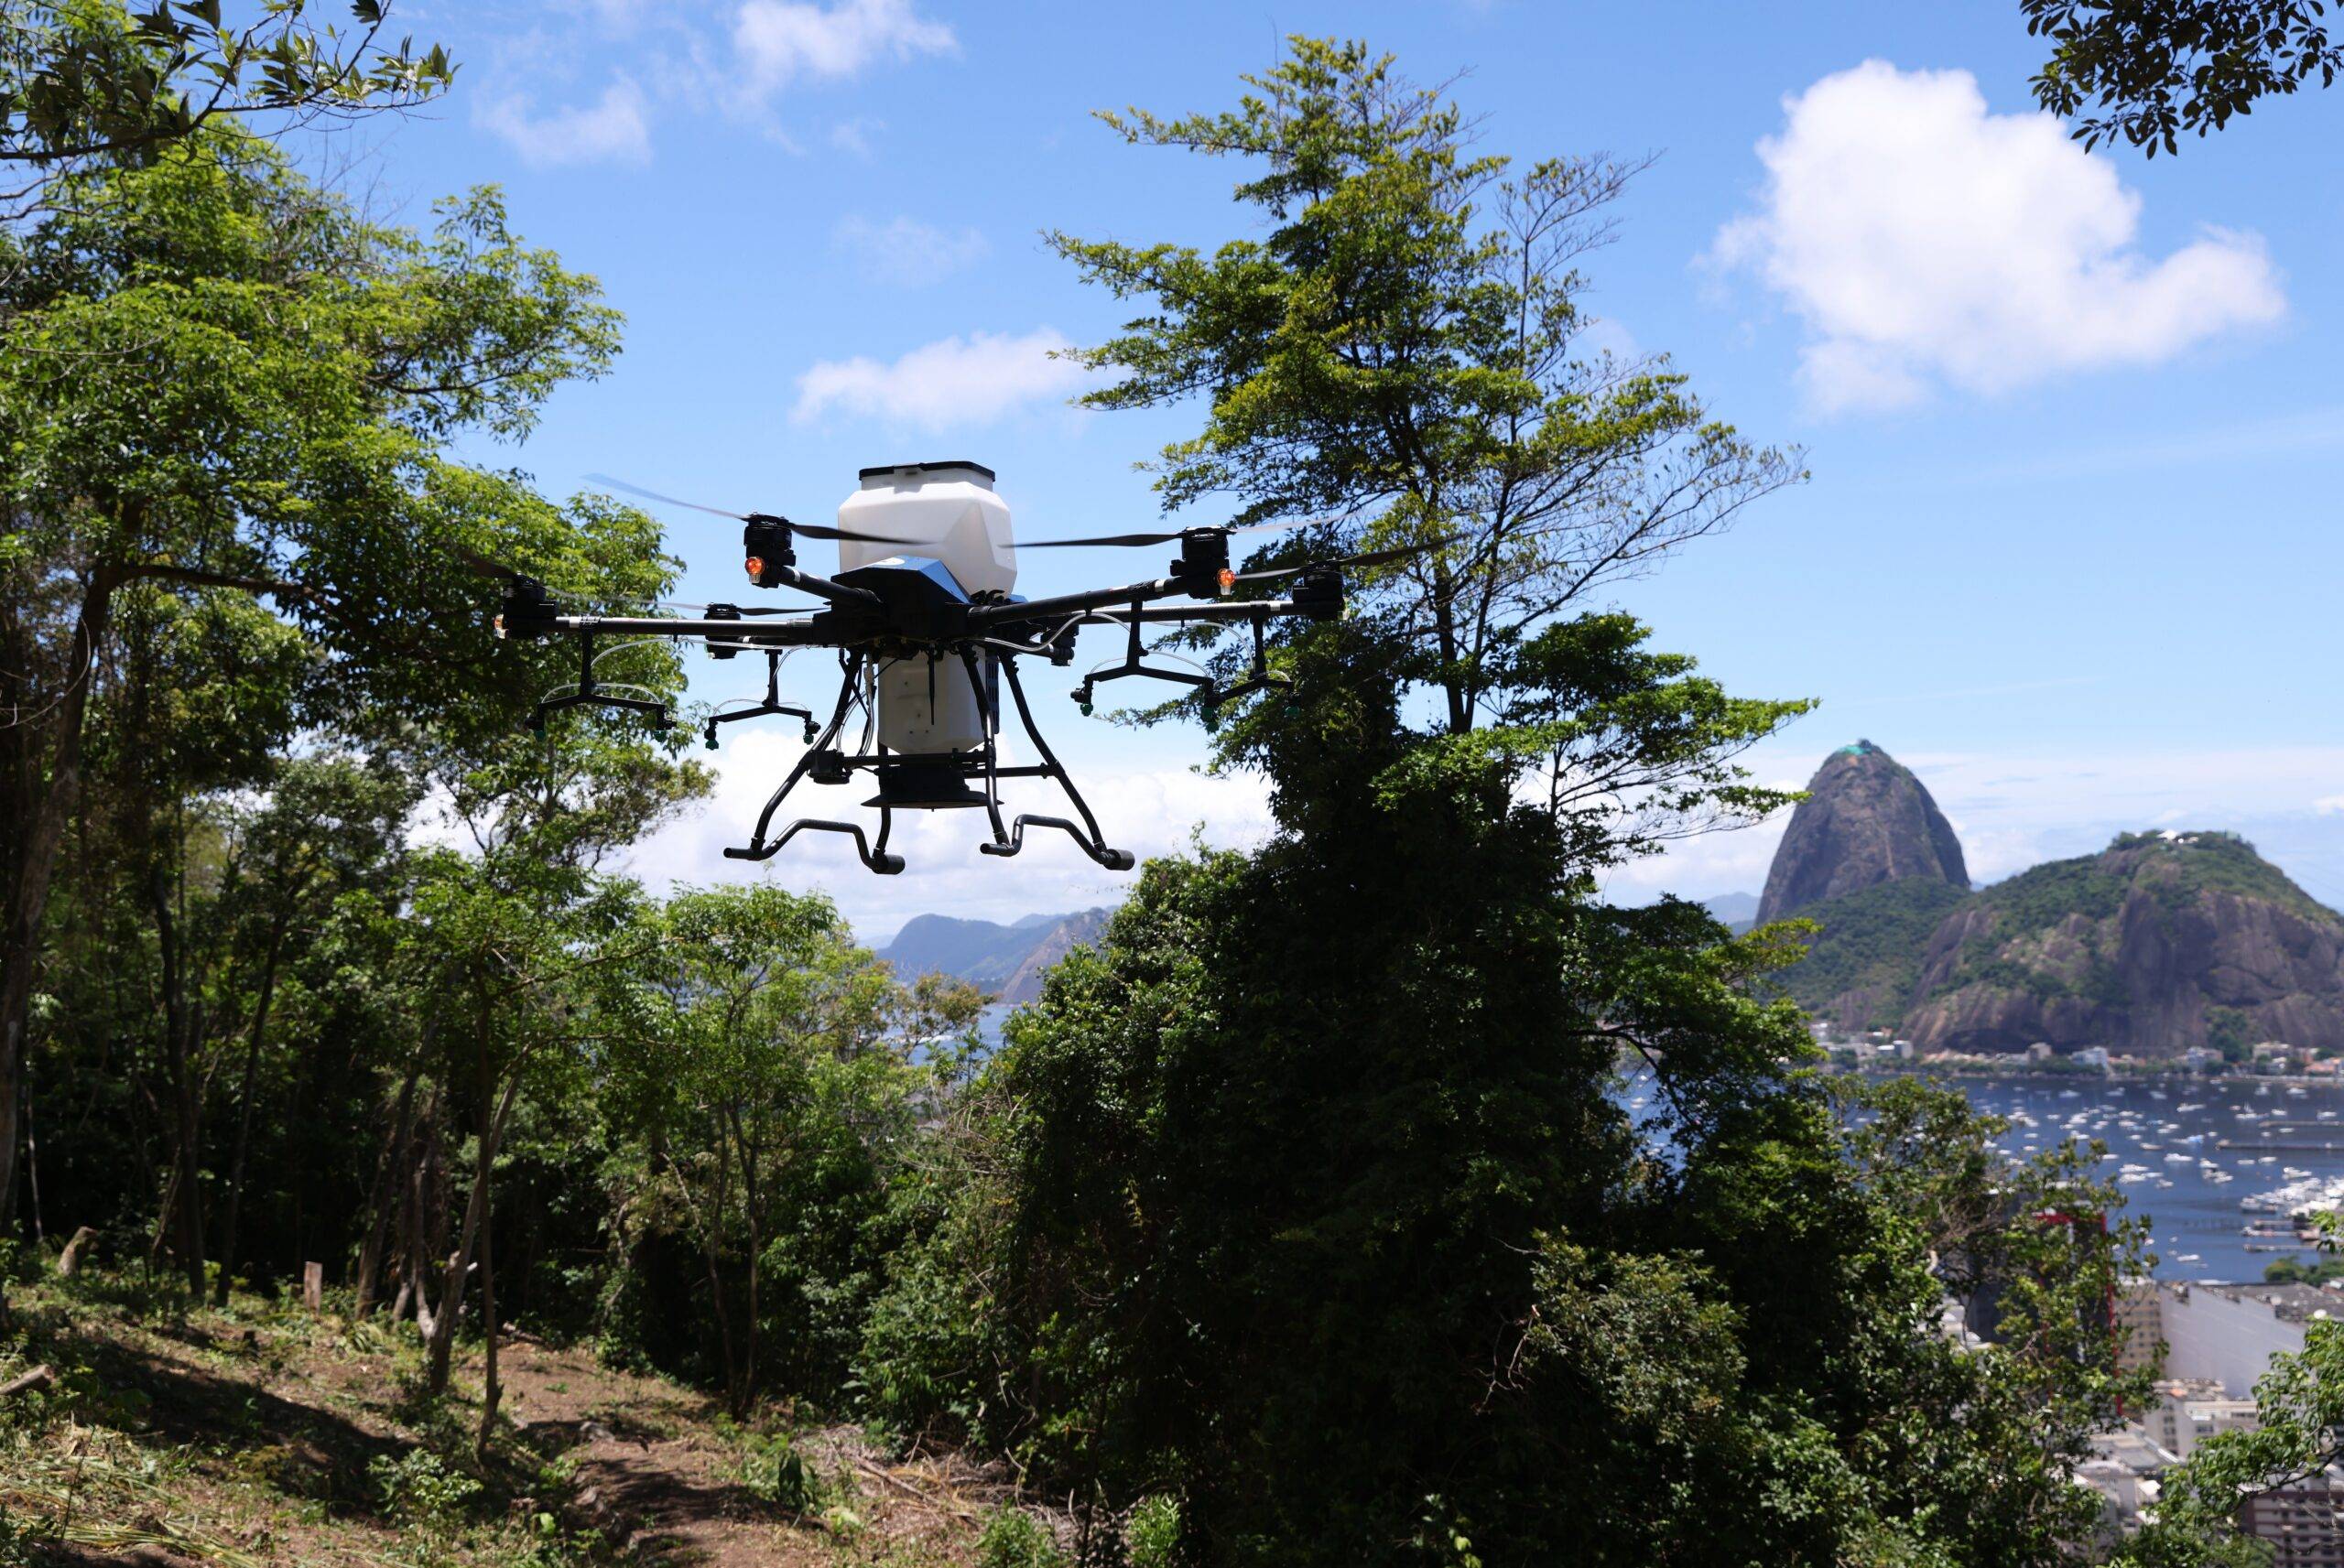 Morfo fait de la reforestation grâce aux drones.